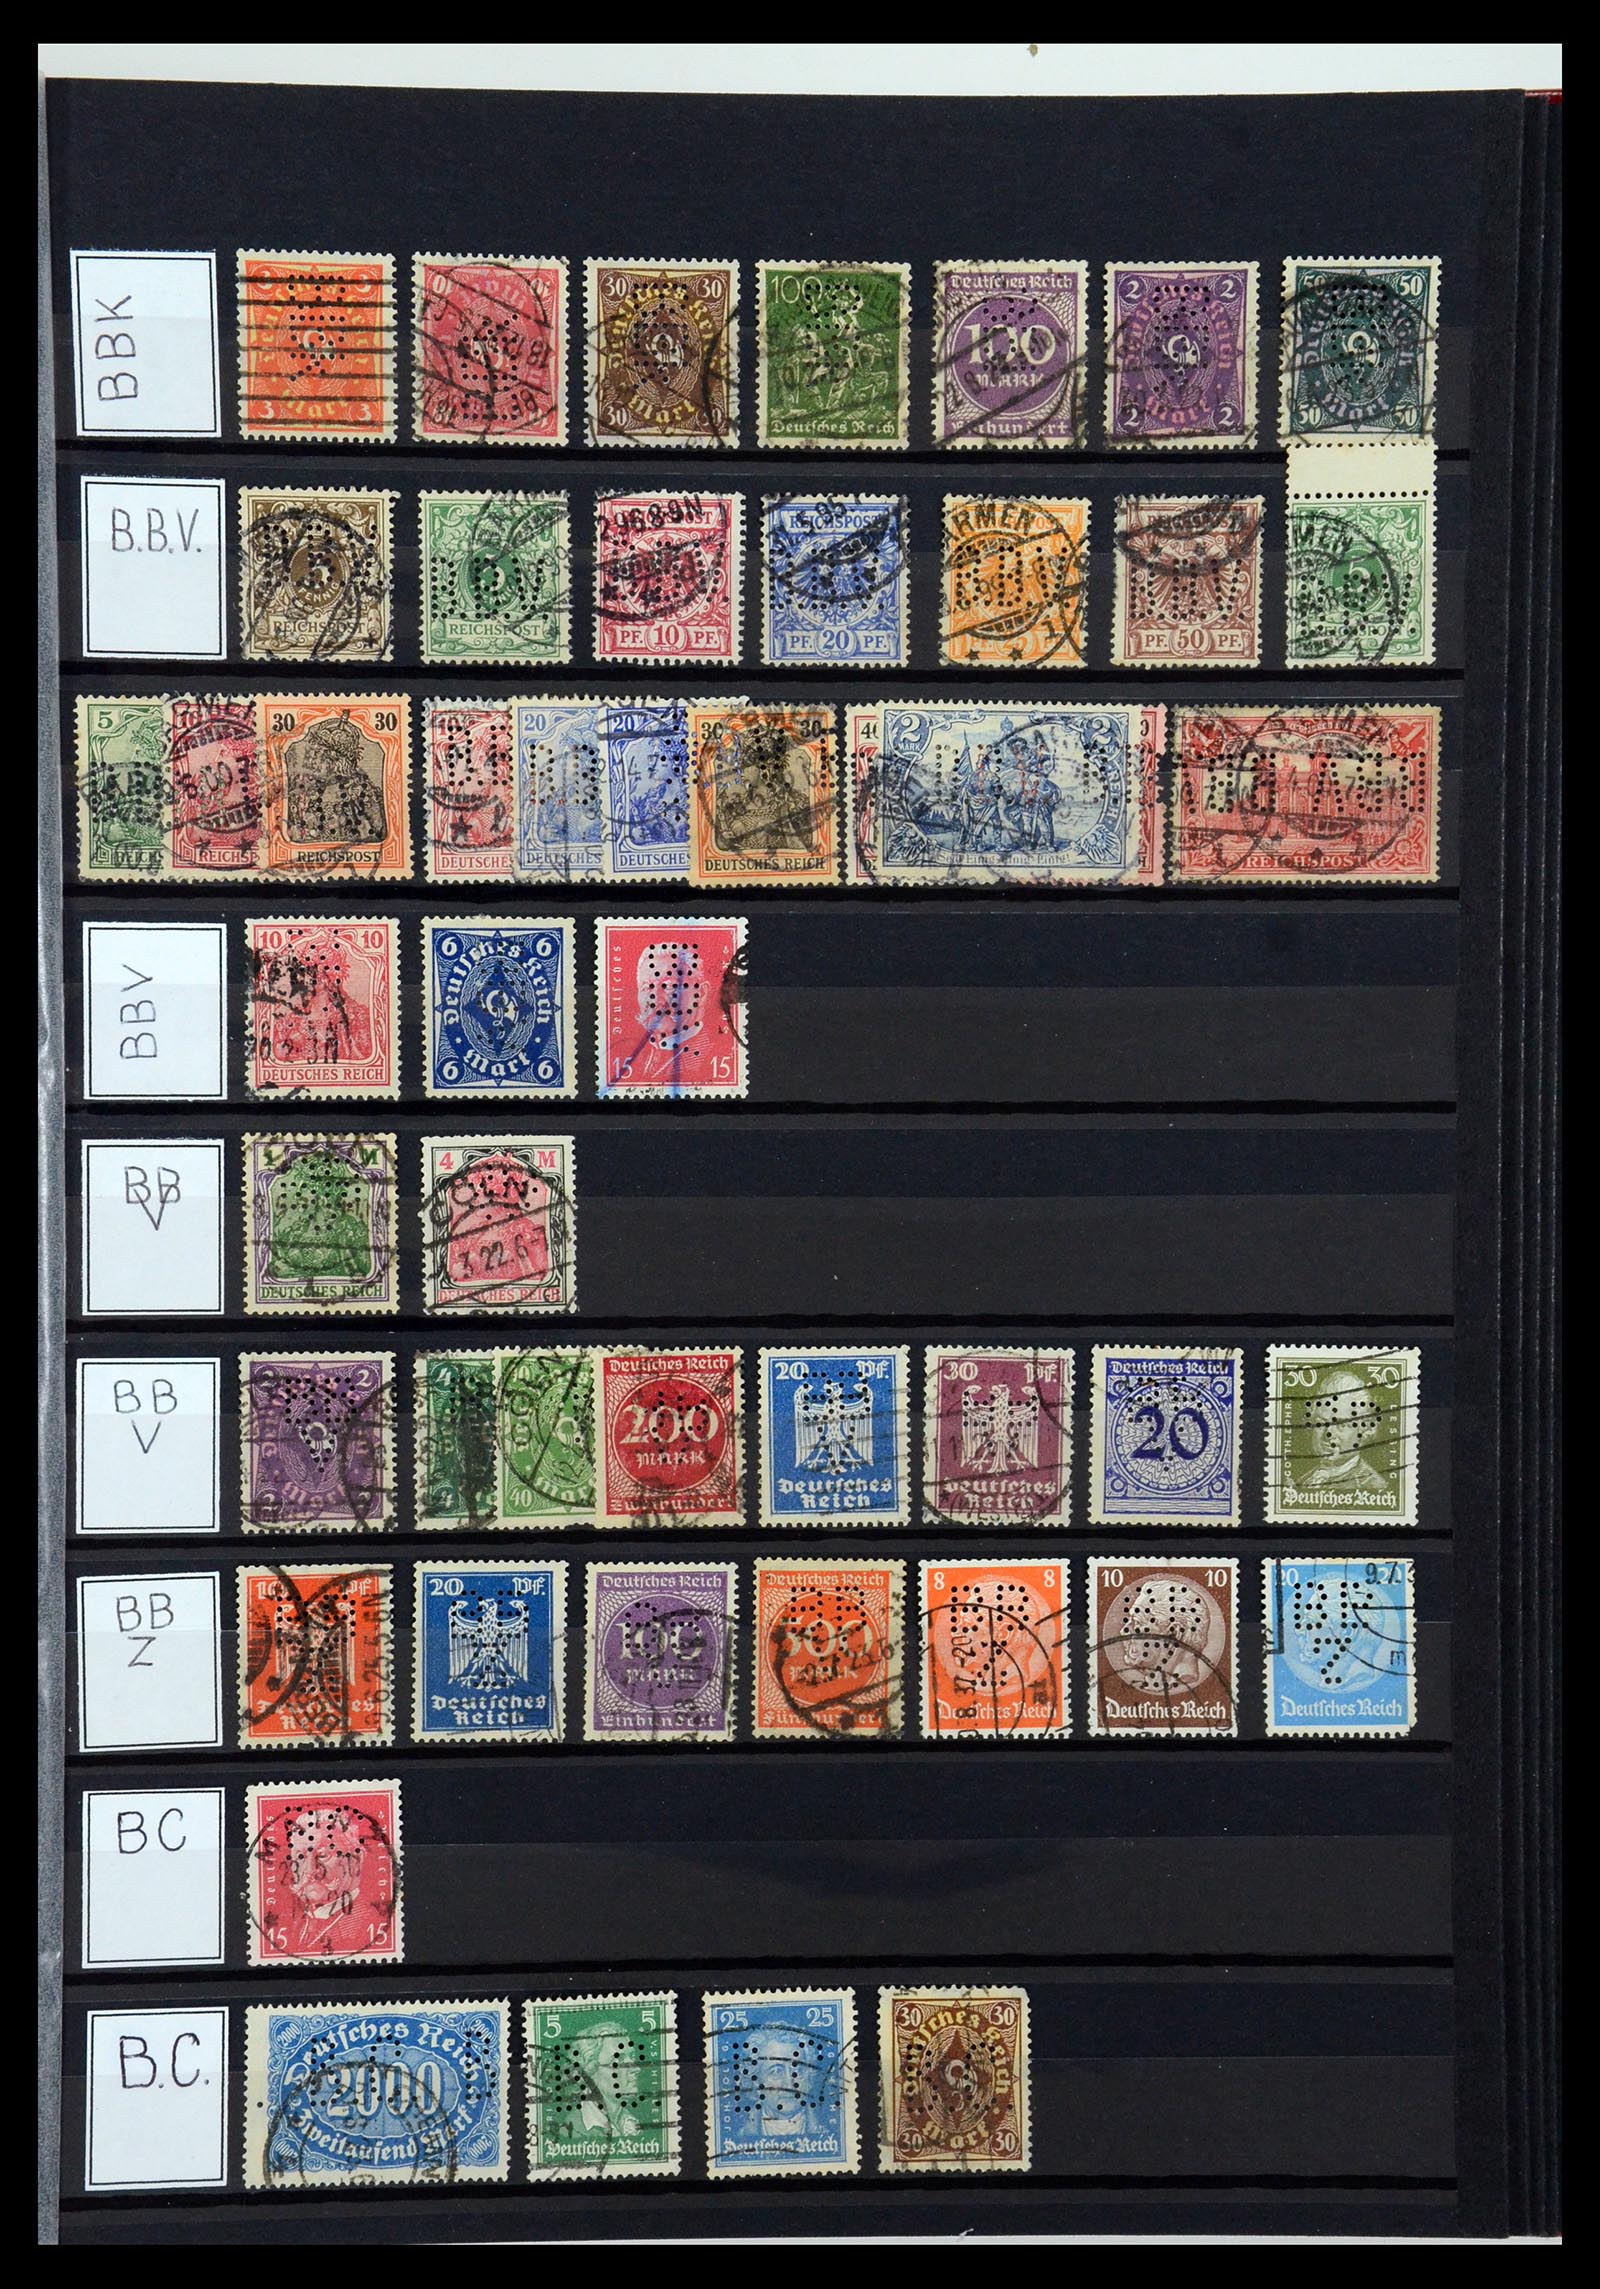 36405 035 - Stamp collection 36405 German Reich perfins 1880-1945.